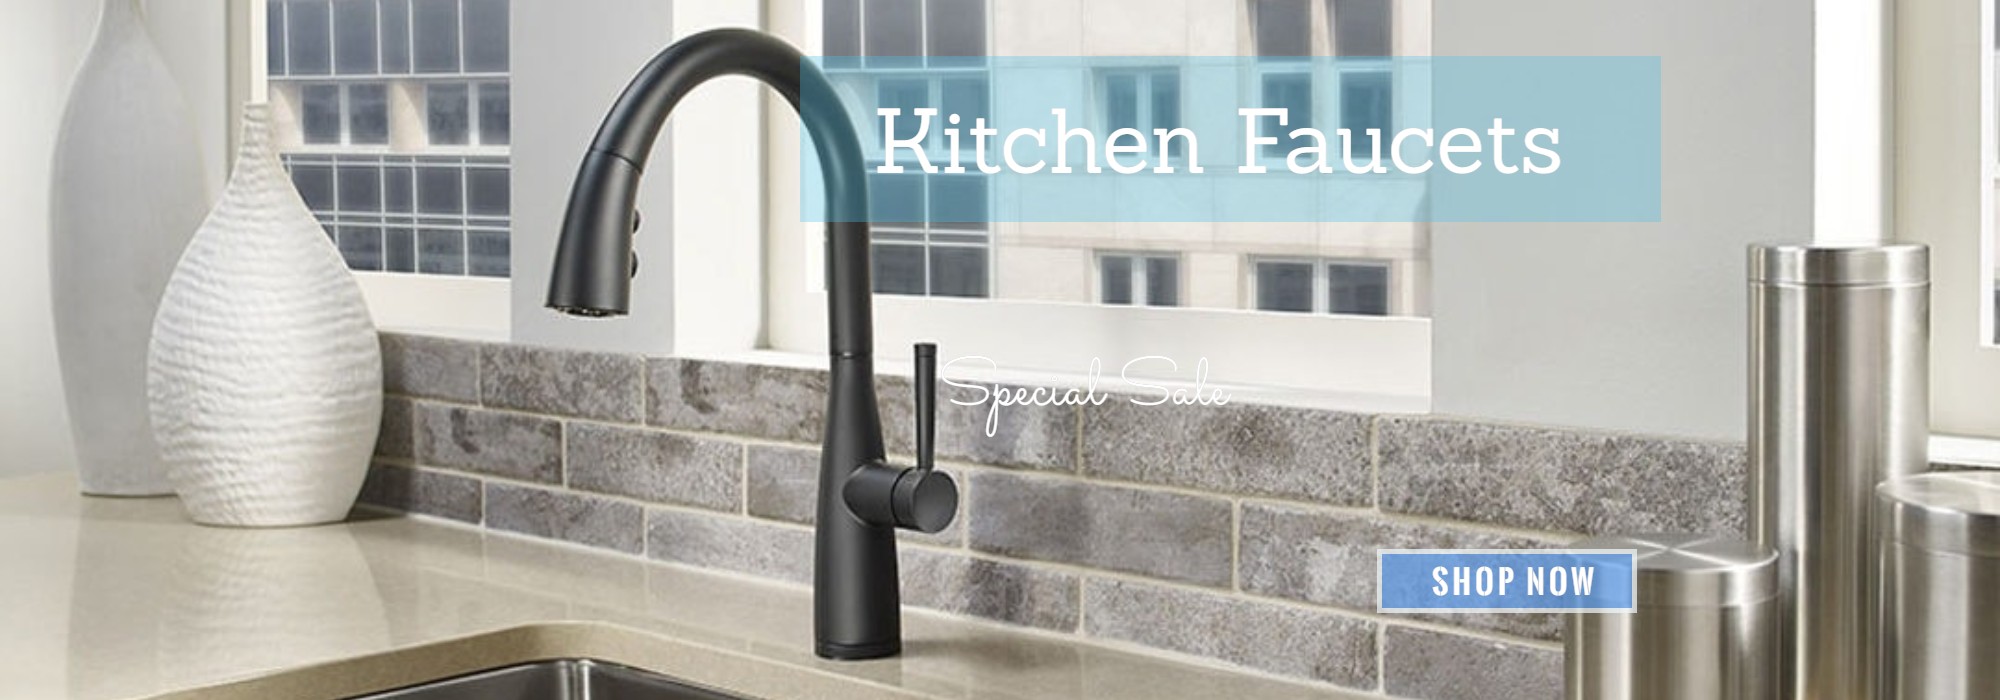 kitchen faucet sale